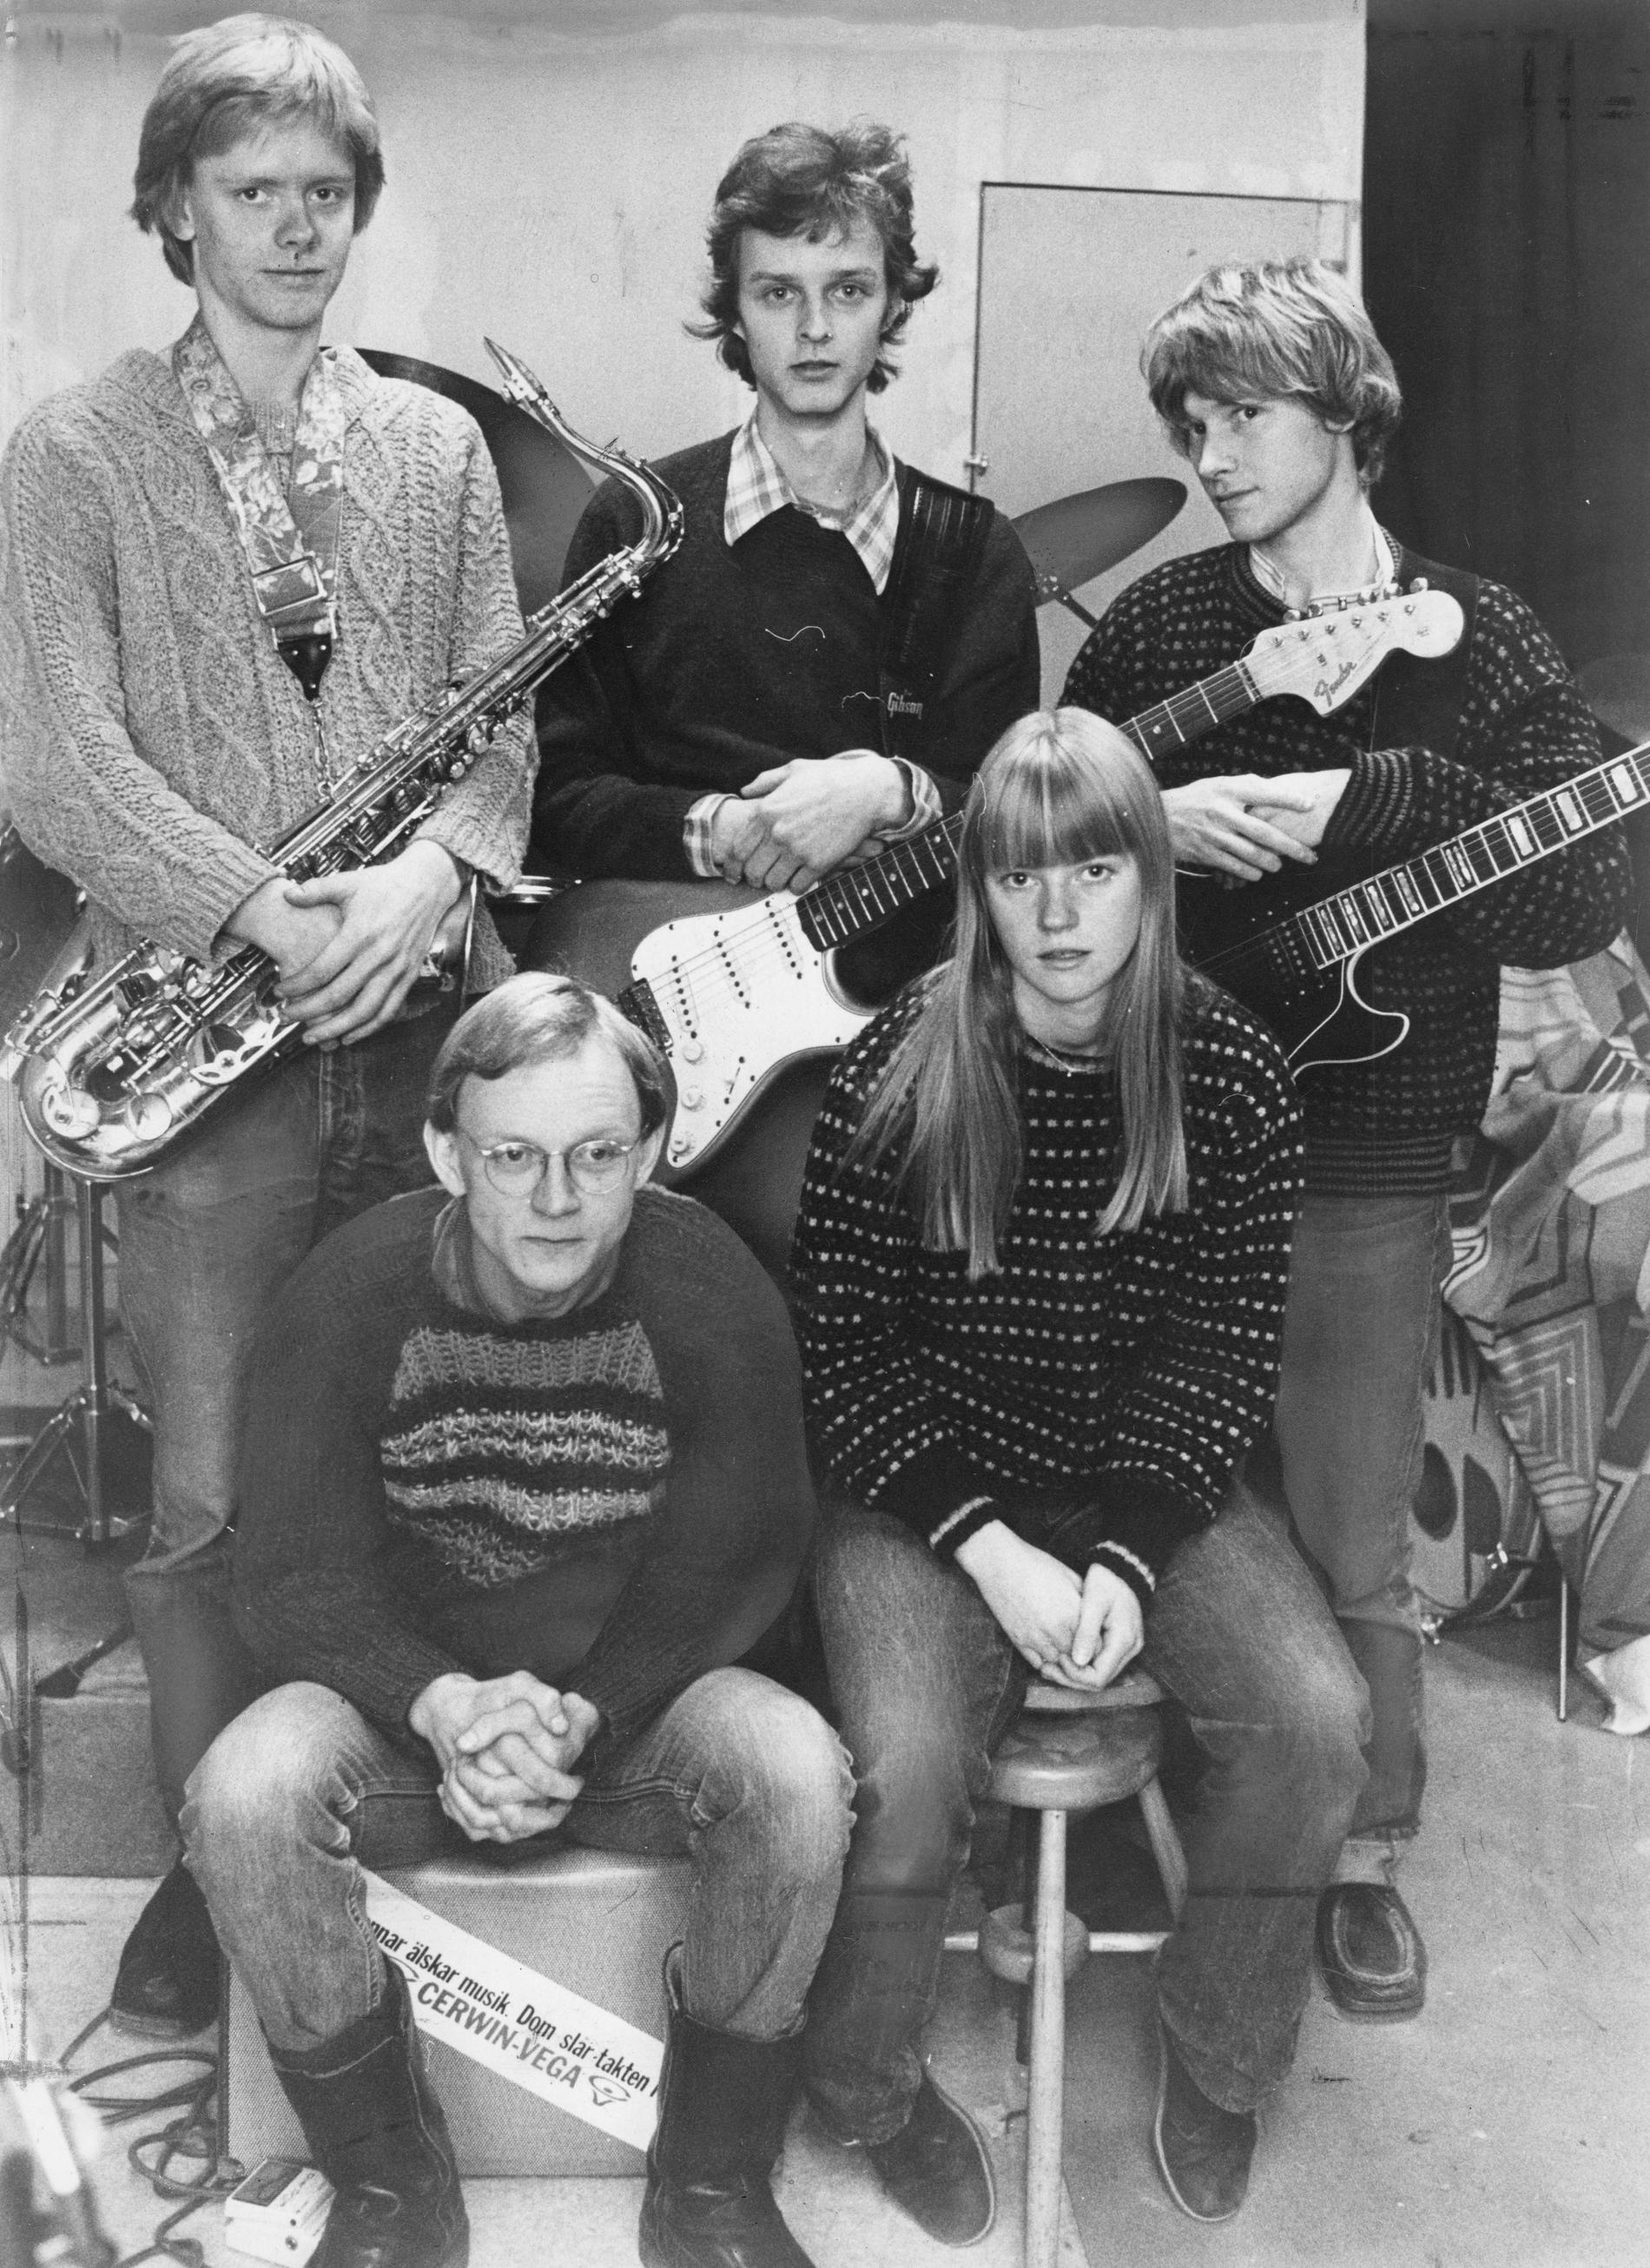 Lolita Pop i november 1980. Stående från vänster: Per Eriksson (i dag Ståhlberg, först saxofon och senare trummor), Benkt Svensson (i dag Söderberg, gitarr), Sten Booberg (gitarr). Sittande: Thomas Johansson (bas), Karin Wistrand (sång).